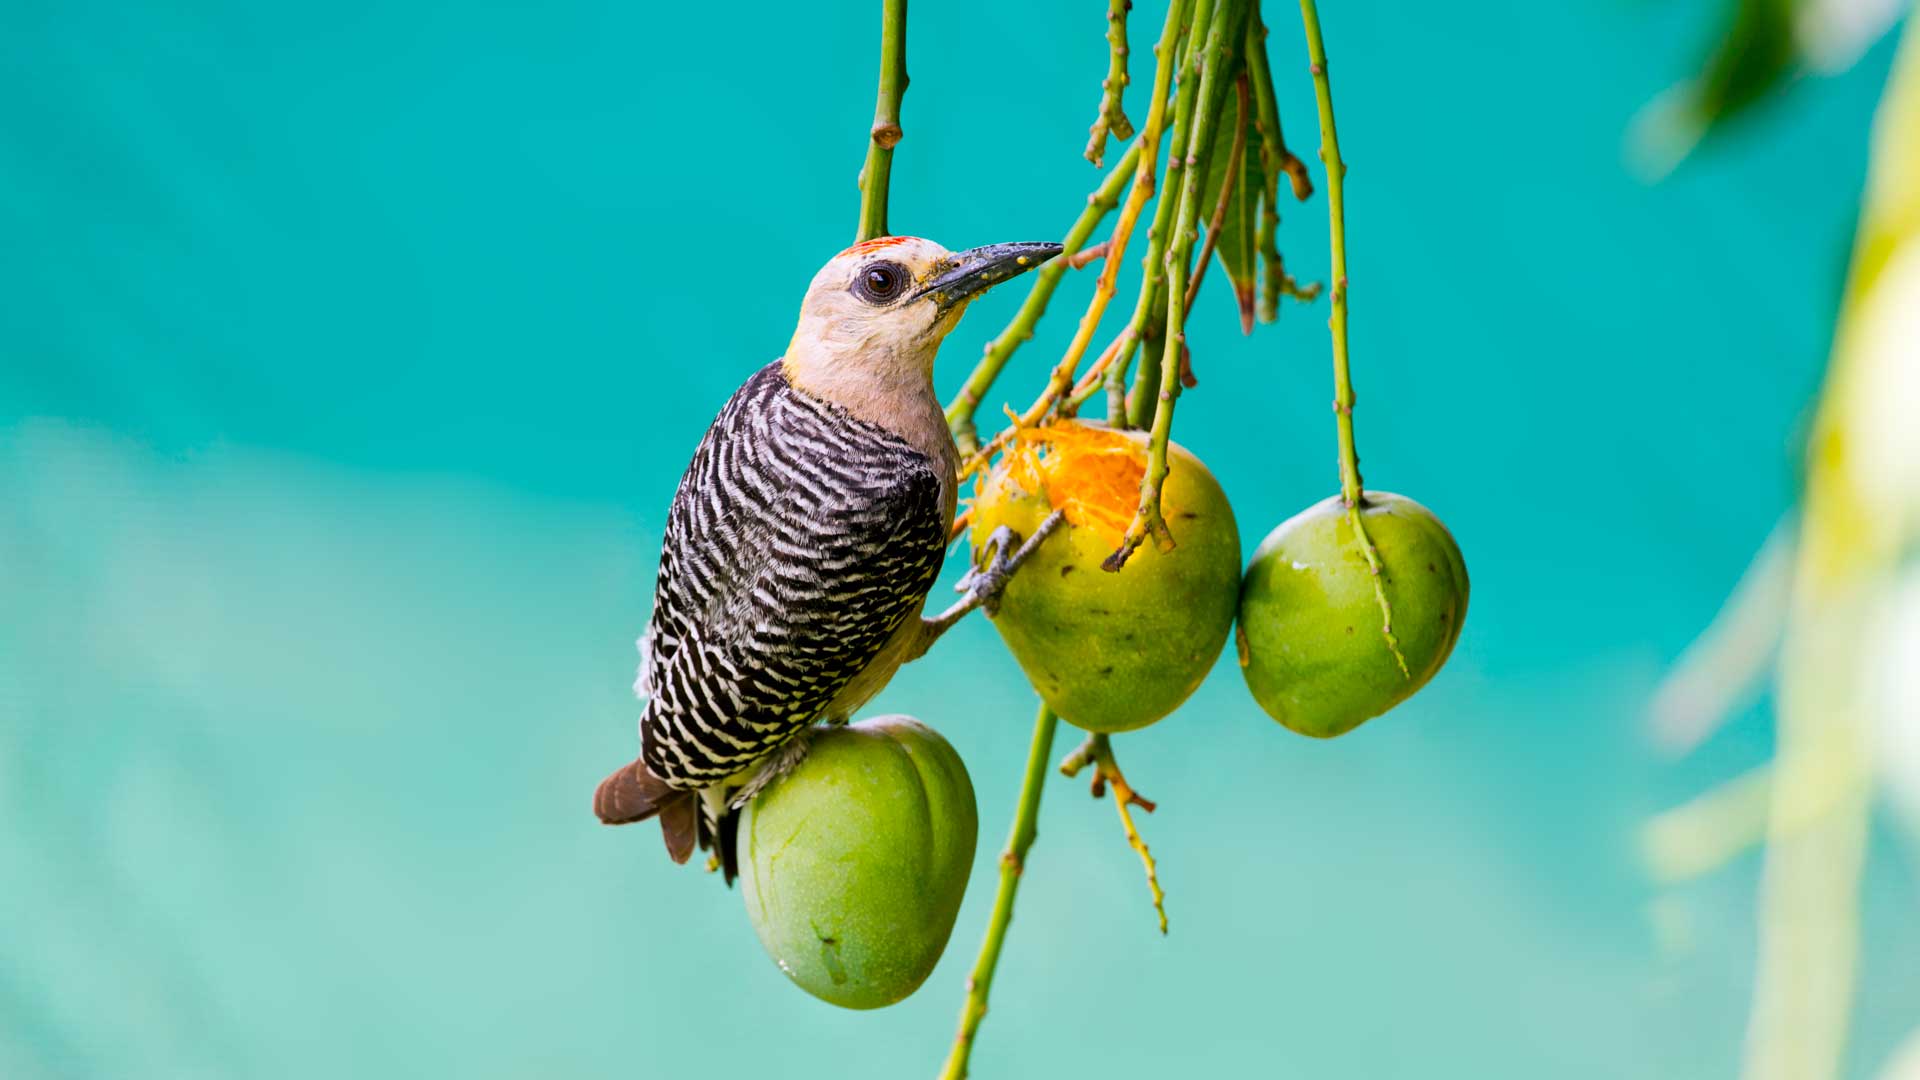 AHoffmans woodpecker feeding on a mango